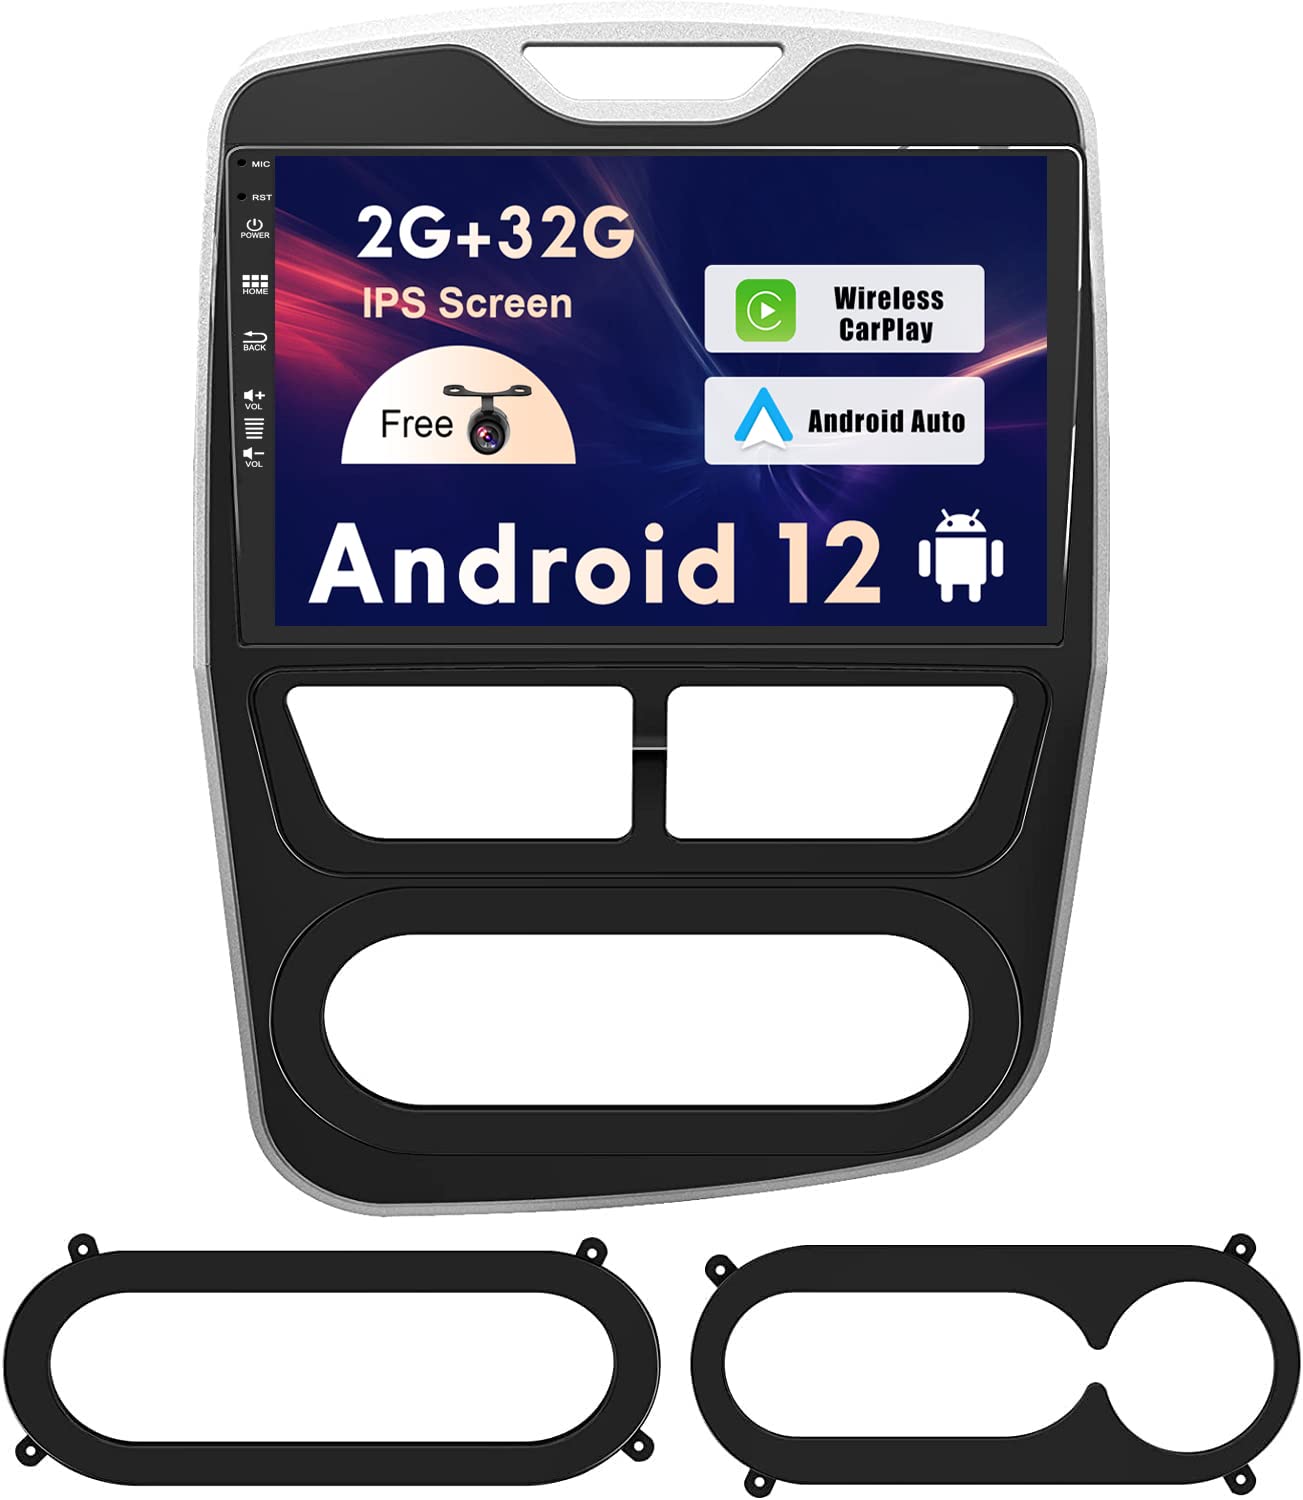 SXAUTO Android 12 IPS Autoradio Passt für Renault CLIO (2012-2016) - Eingebaut Carplay/Android Auto - Rückfahrkamera KOSTENLOS - 2G+32G - Lenkradsteuerung DAB Fast-Boot WiFi DSP 4G - 2 Din 10.1 Zoll